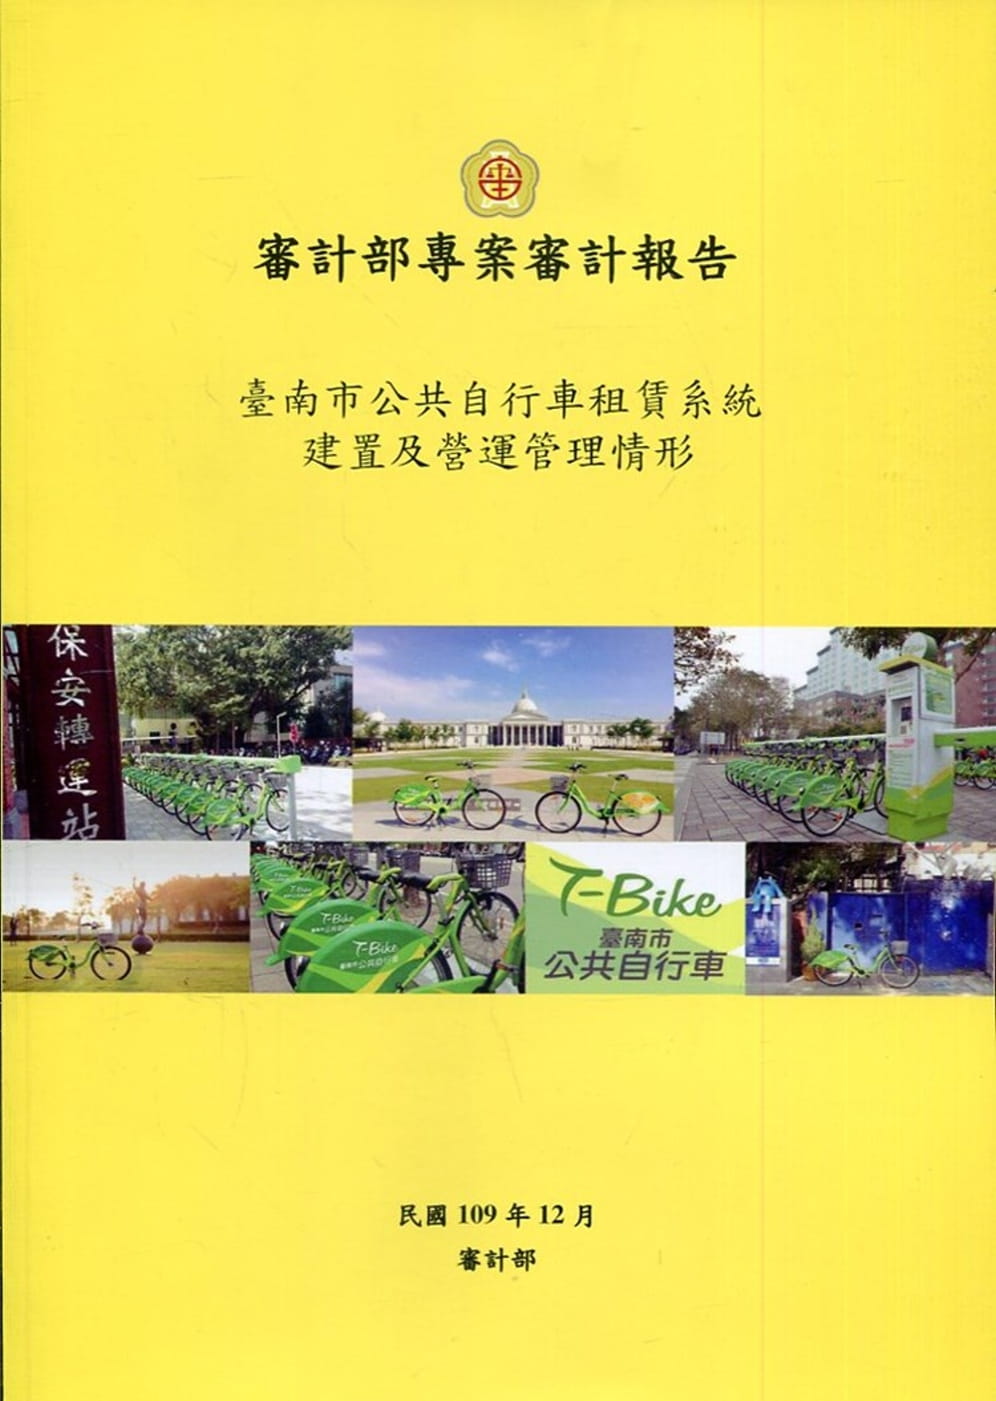 臺南市公共自行車租賃系統建置及營運管理情形